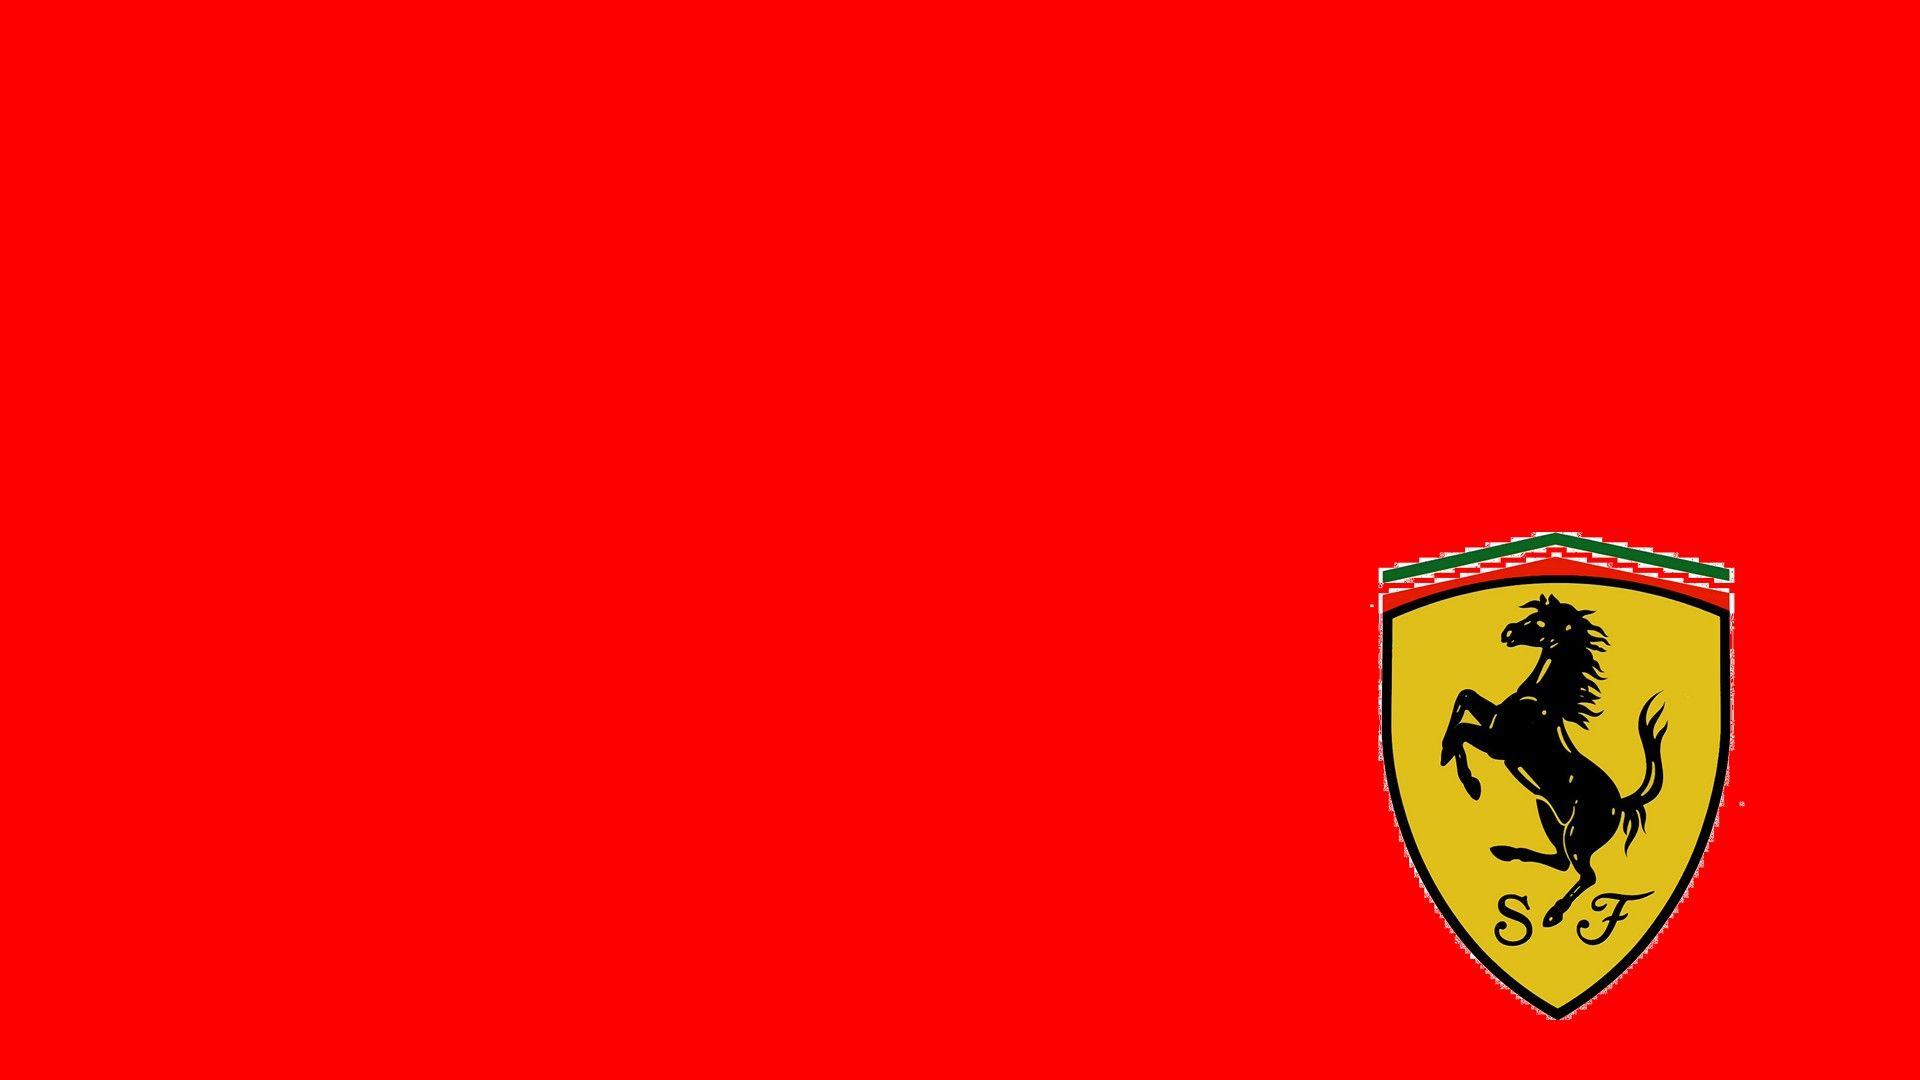 Scuderia Ferrari Logo Red Background 1920x1080 Hd Motorsport